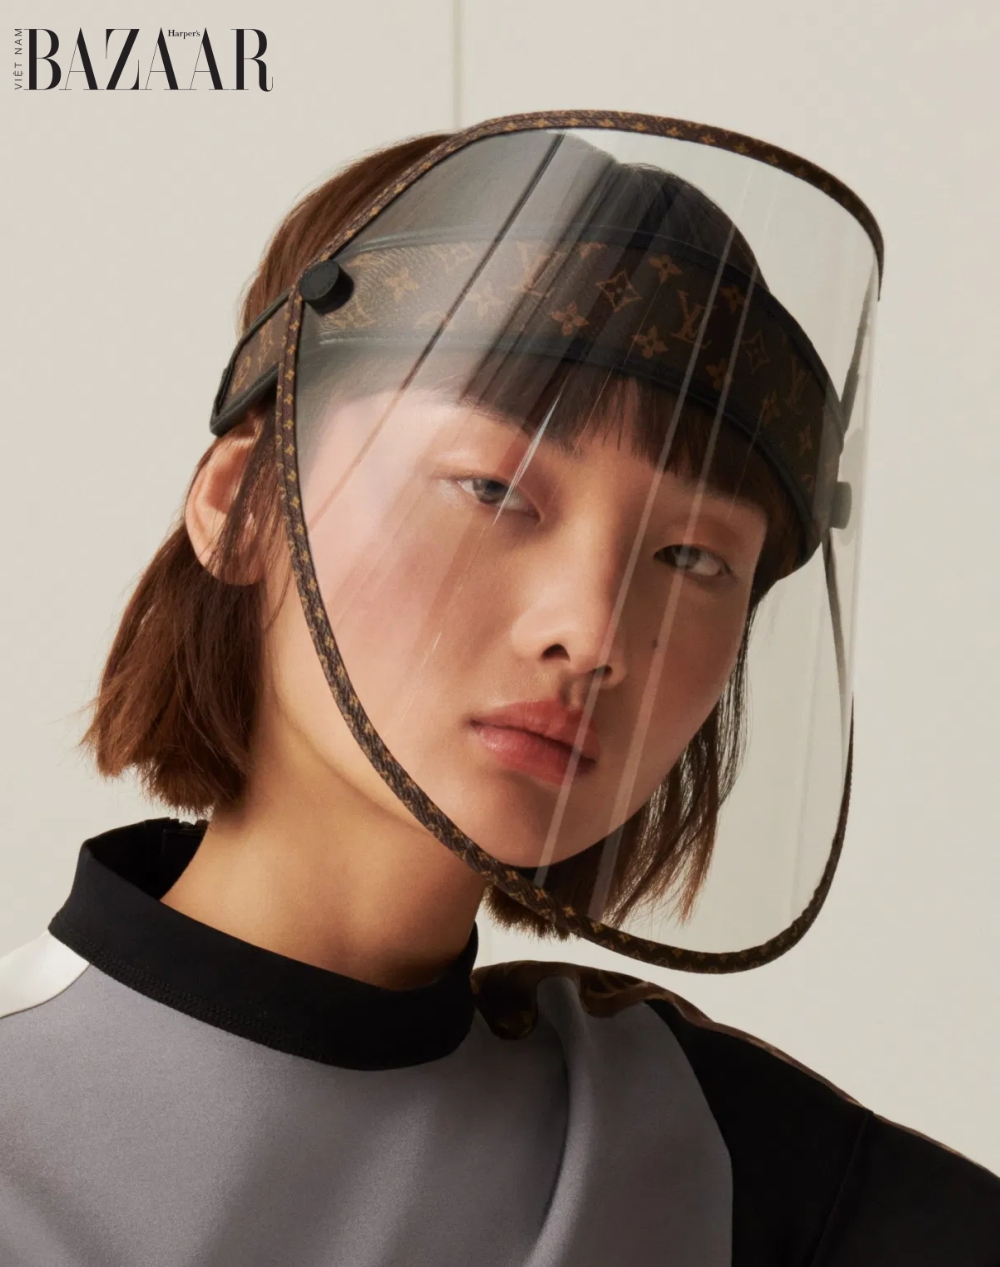 Louis Vuitton tung ra chiếc mặt nạ bảo hộ giá 1000 đô-la Mỹ